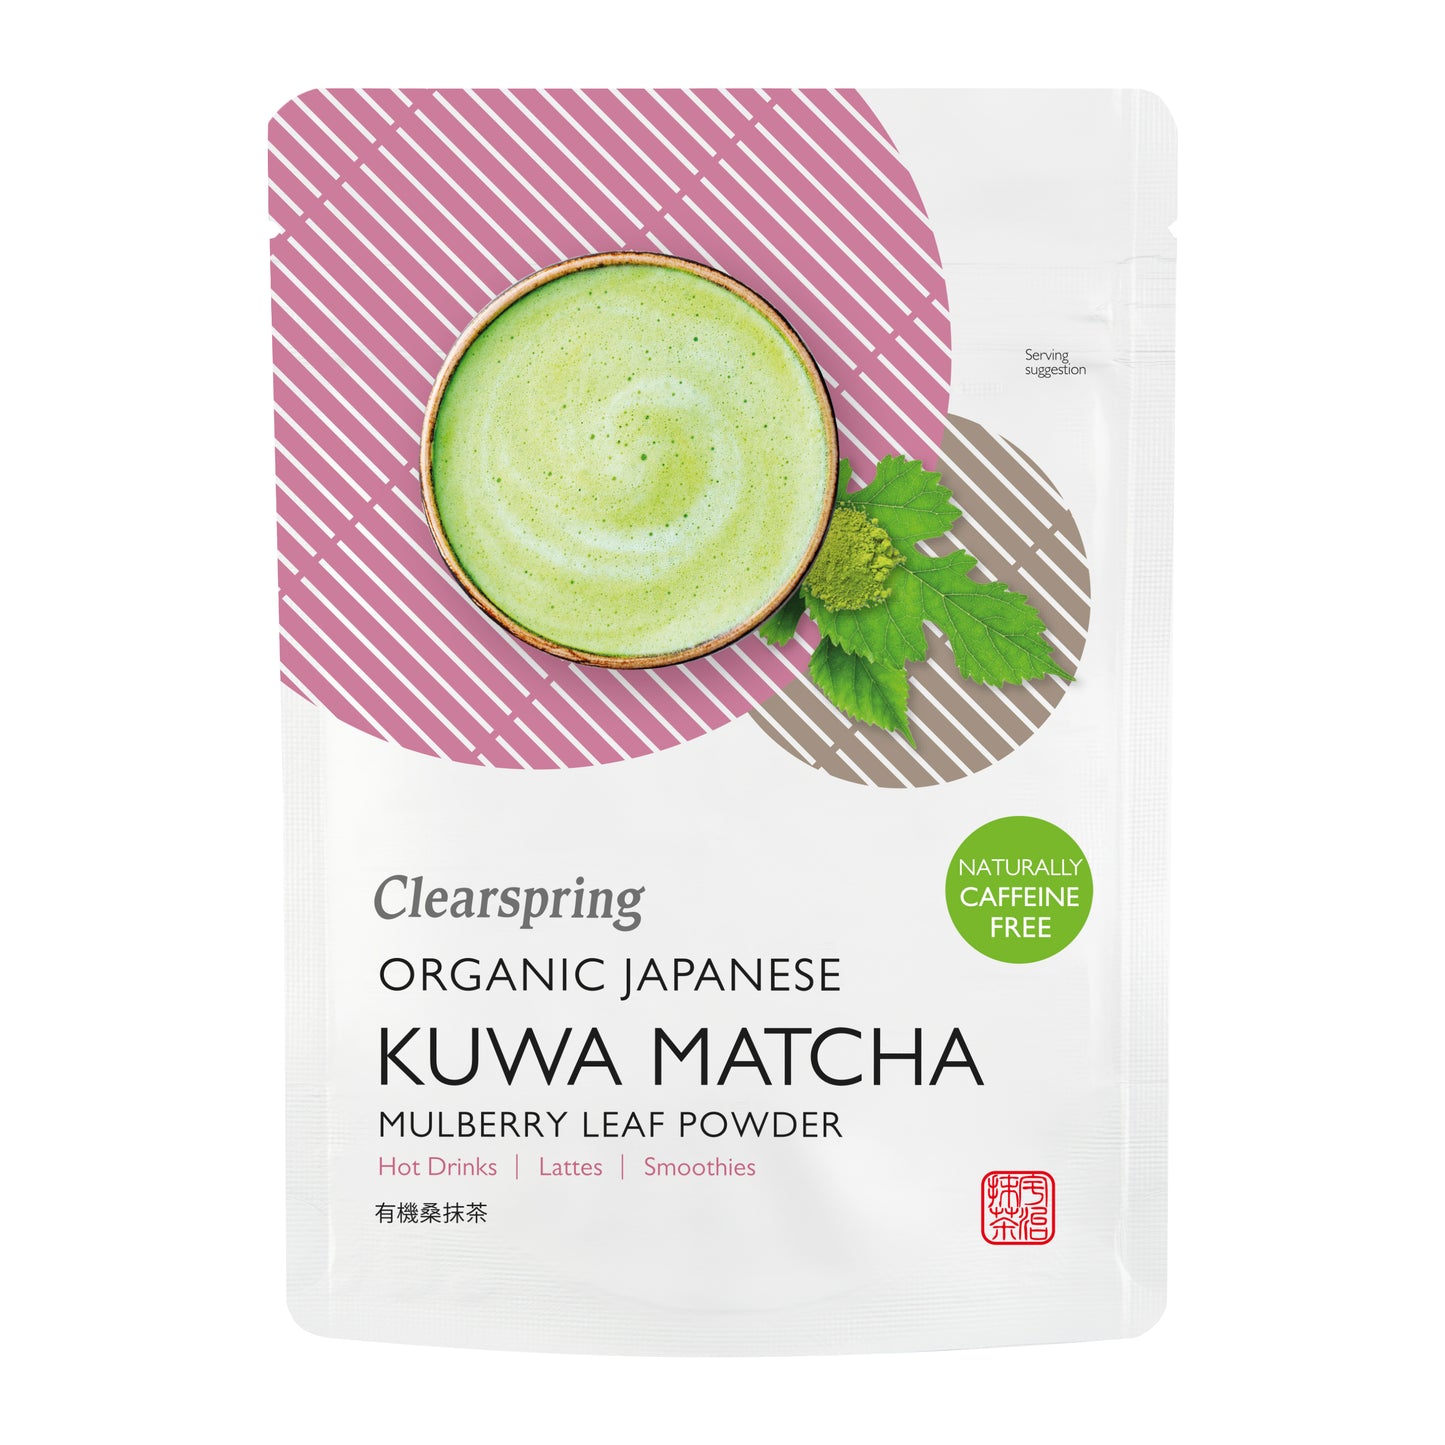 Organic Japanese Kuwa Matcha - Caffeine Free Mulberry Leaf Powder